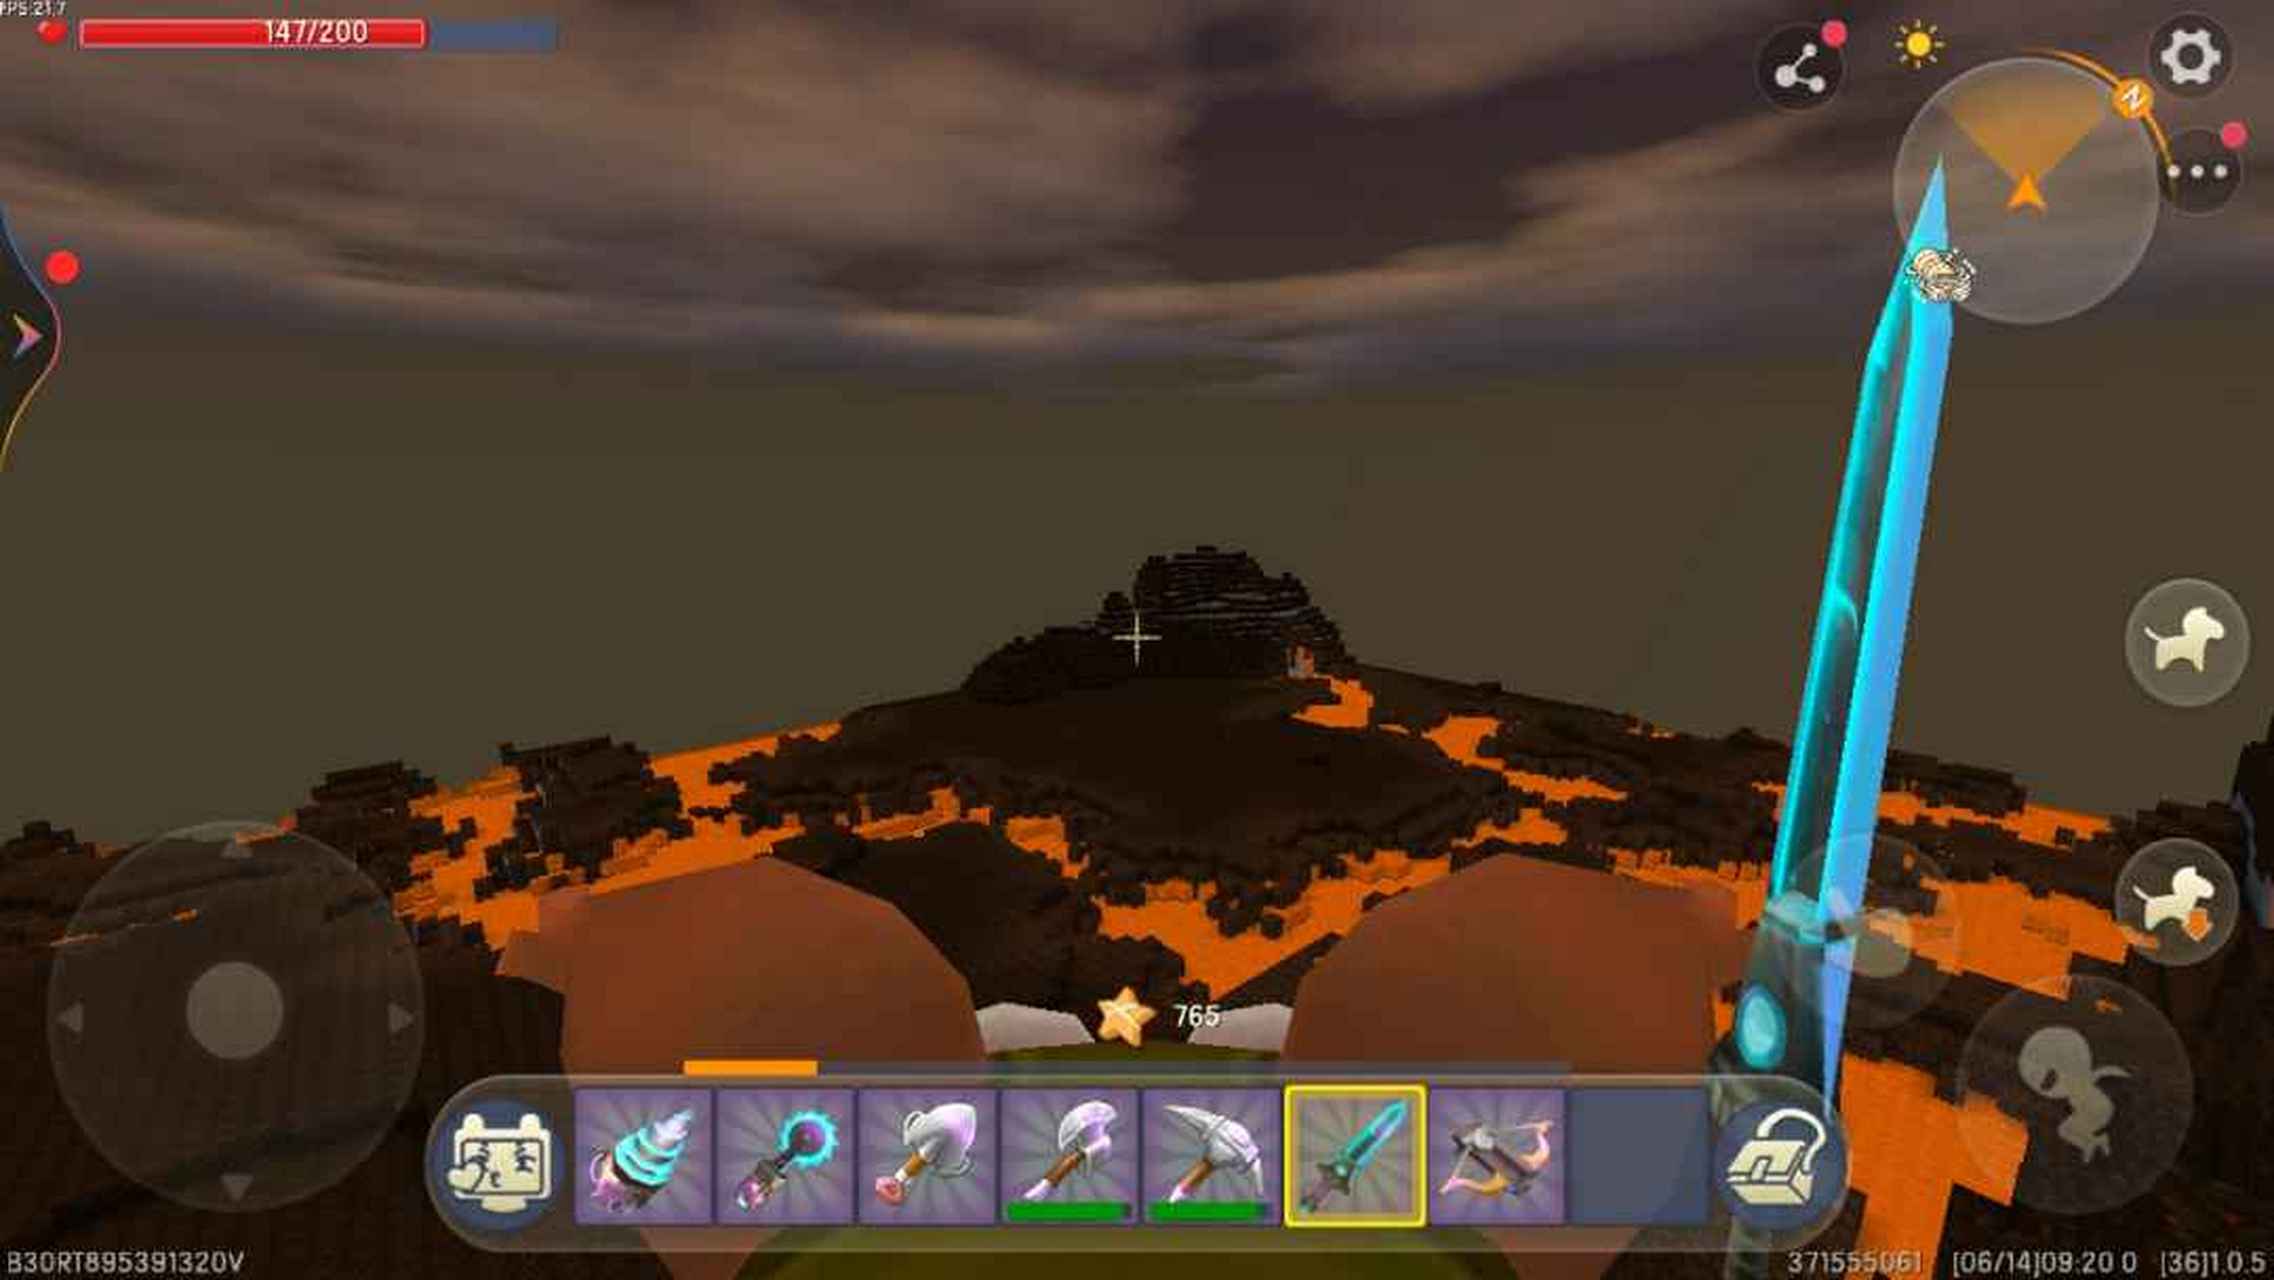 迷你世界:用了24分钟找到了火山祭坛!